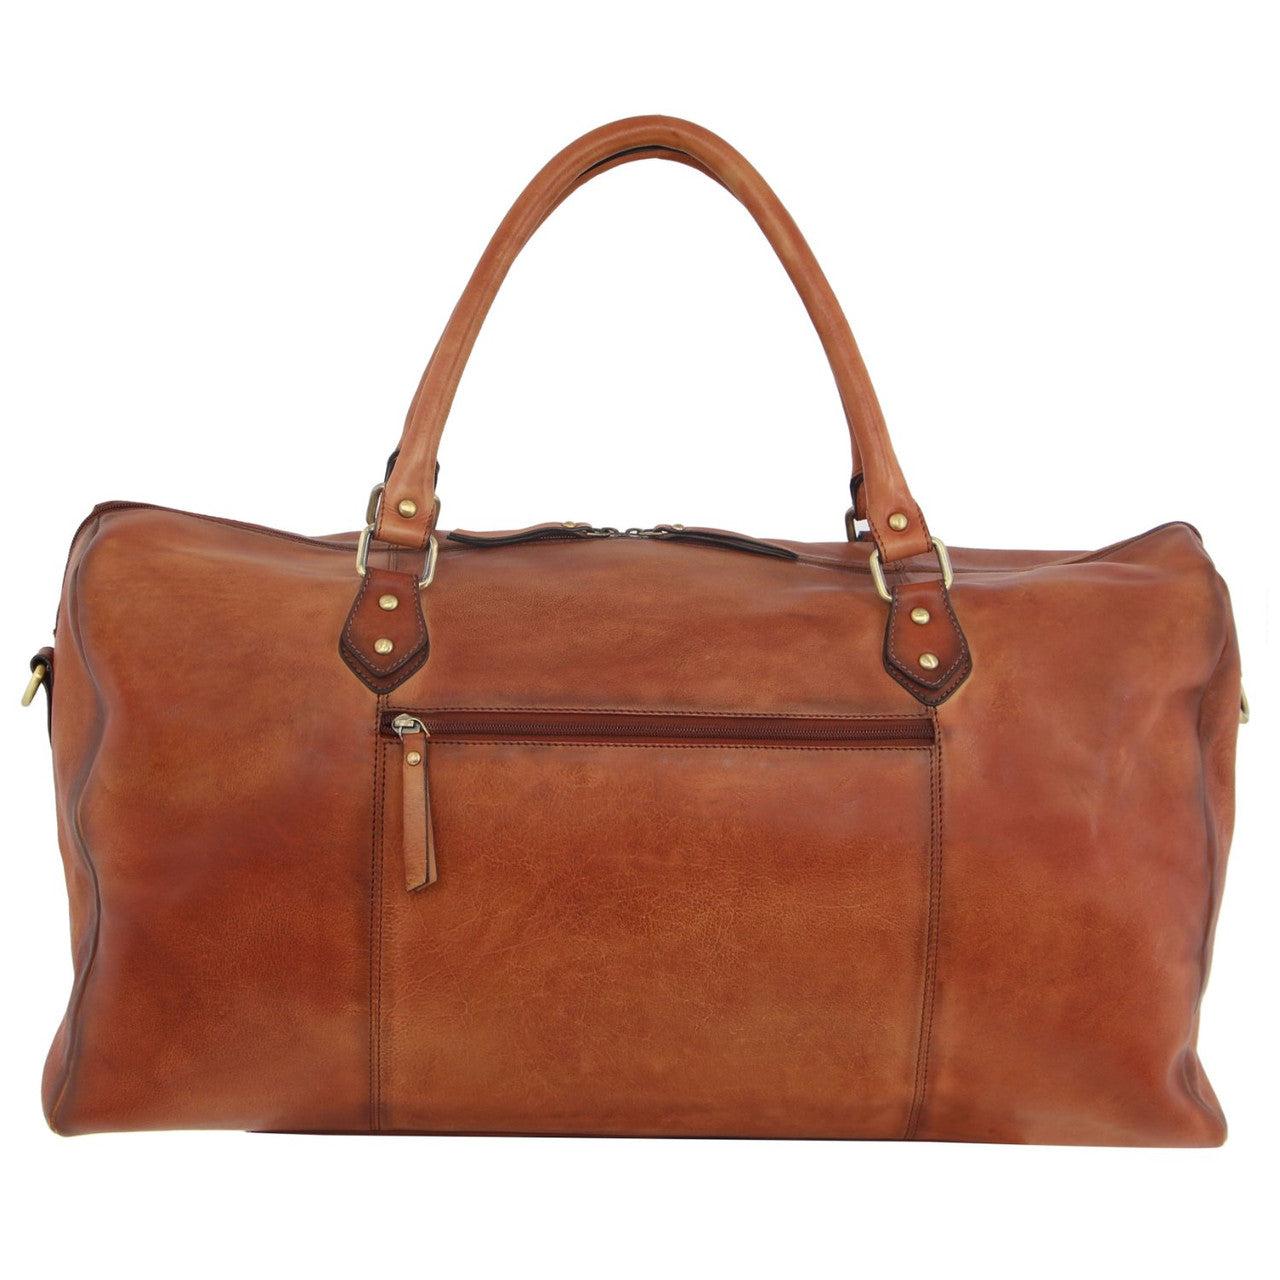 Pierre Cardin - 56cm Leather overnight bag PC3335 - Cognac-3